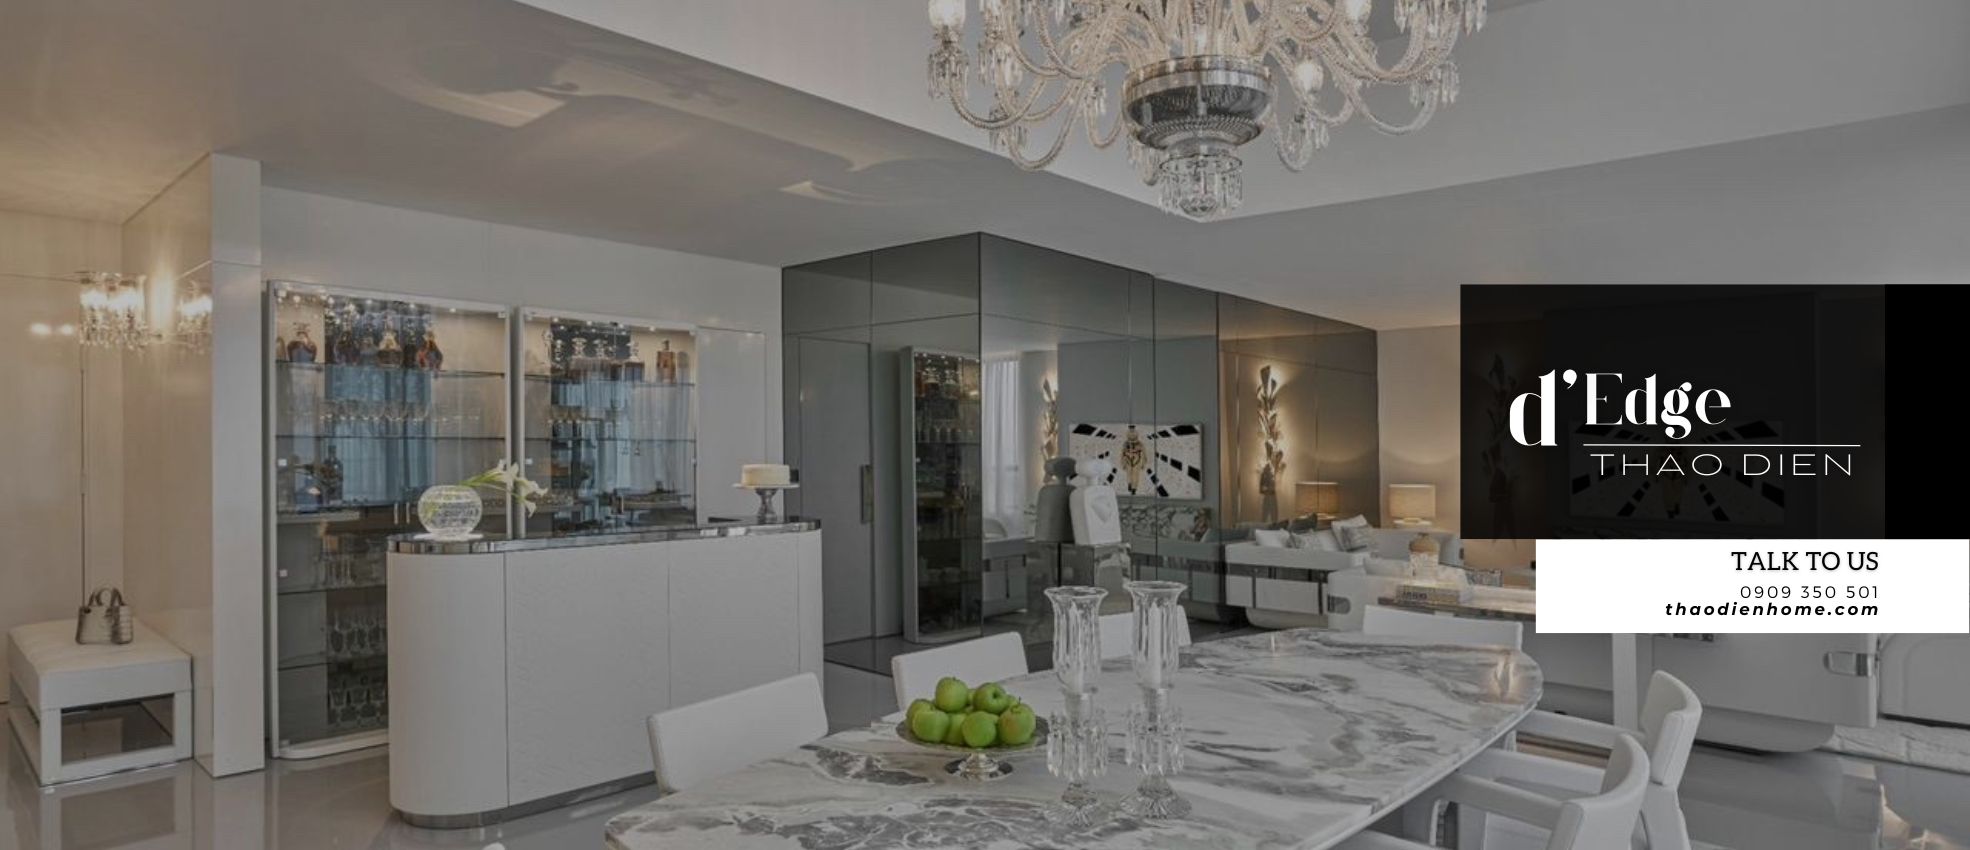 3-Bedroom Duplex d’Edge Thao Dien – A Masterpiece of Luxury Living